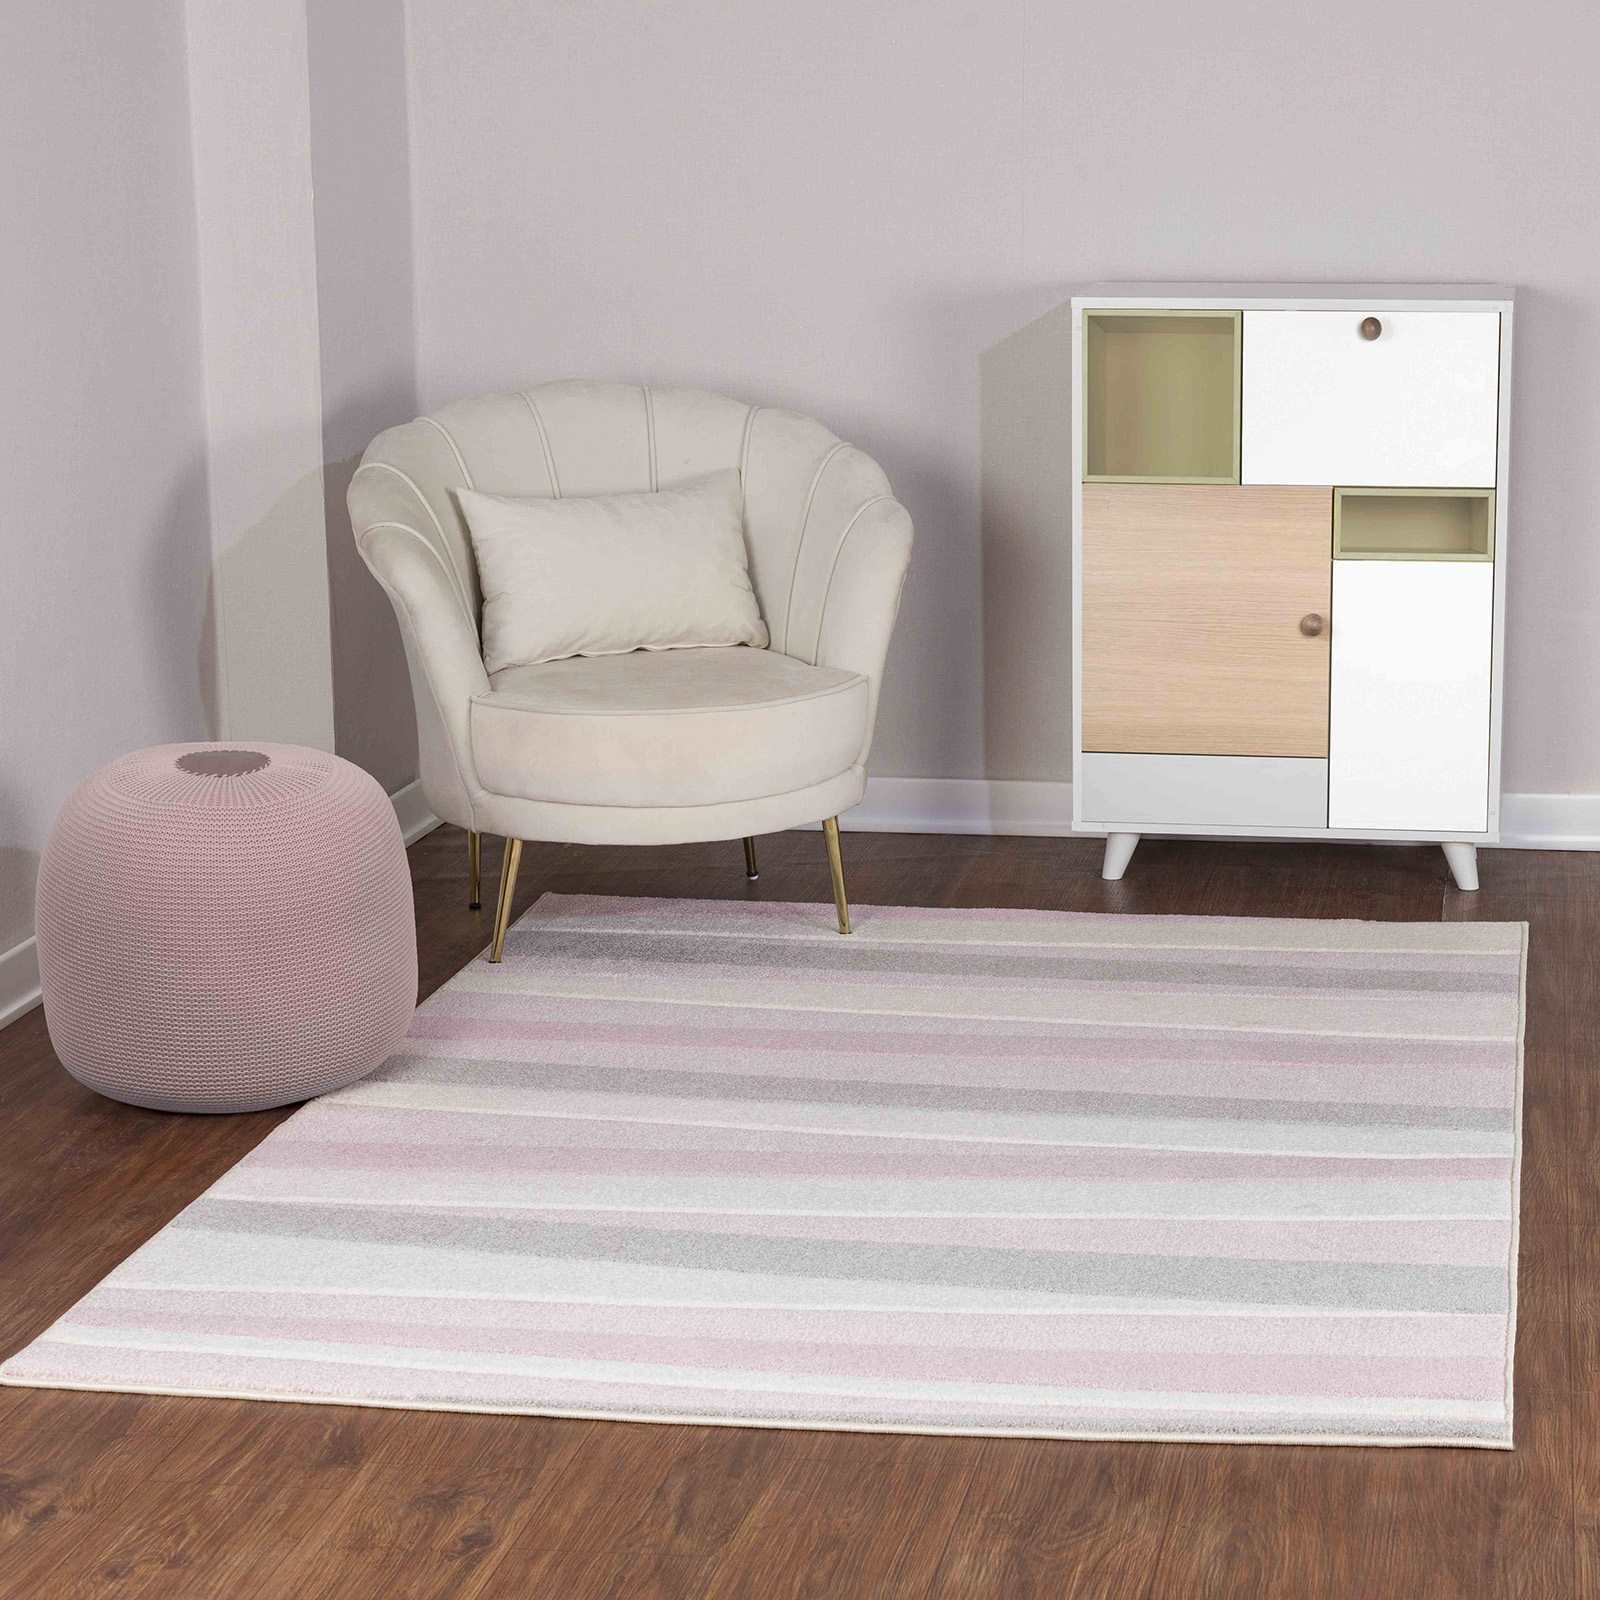 SURYA Teppich für Kinder Weich Kinderzimmer Pastell Gestreift Design Rosa  und Weiß 200 x 275 cm